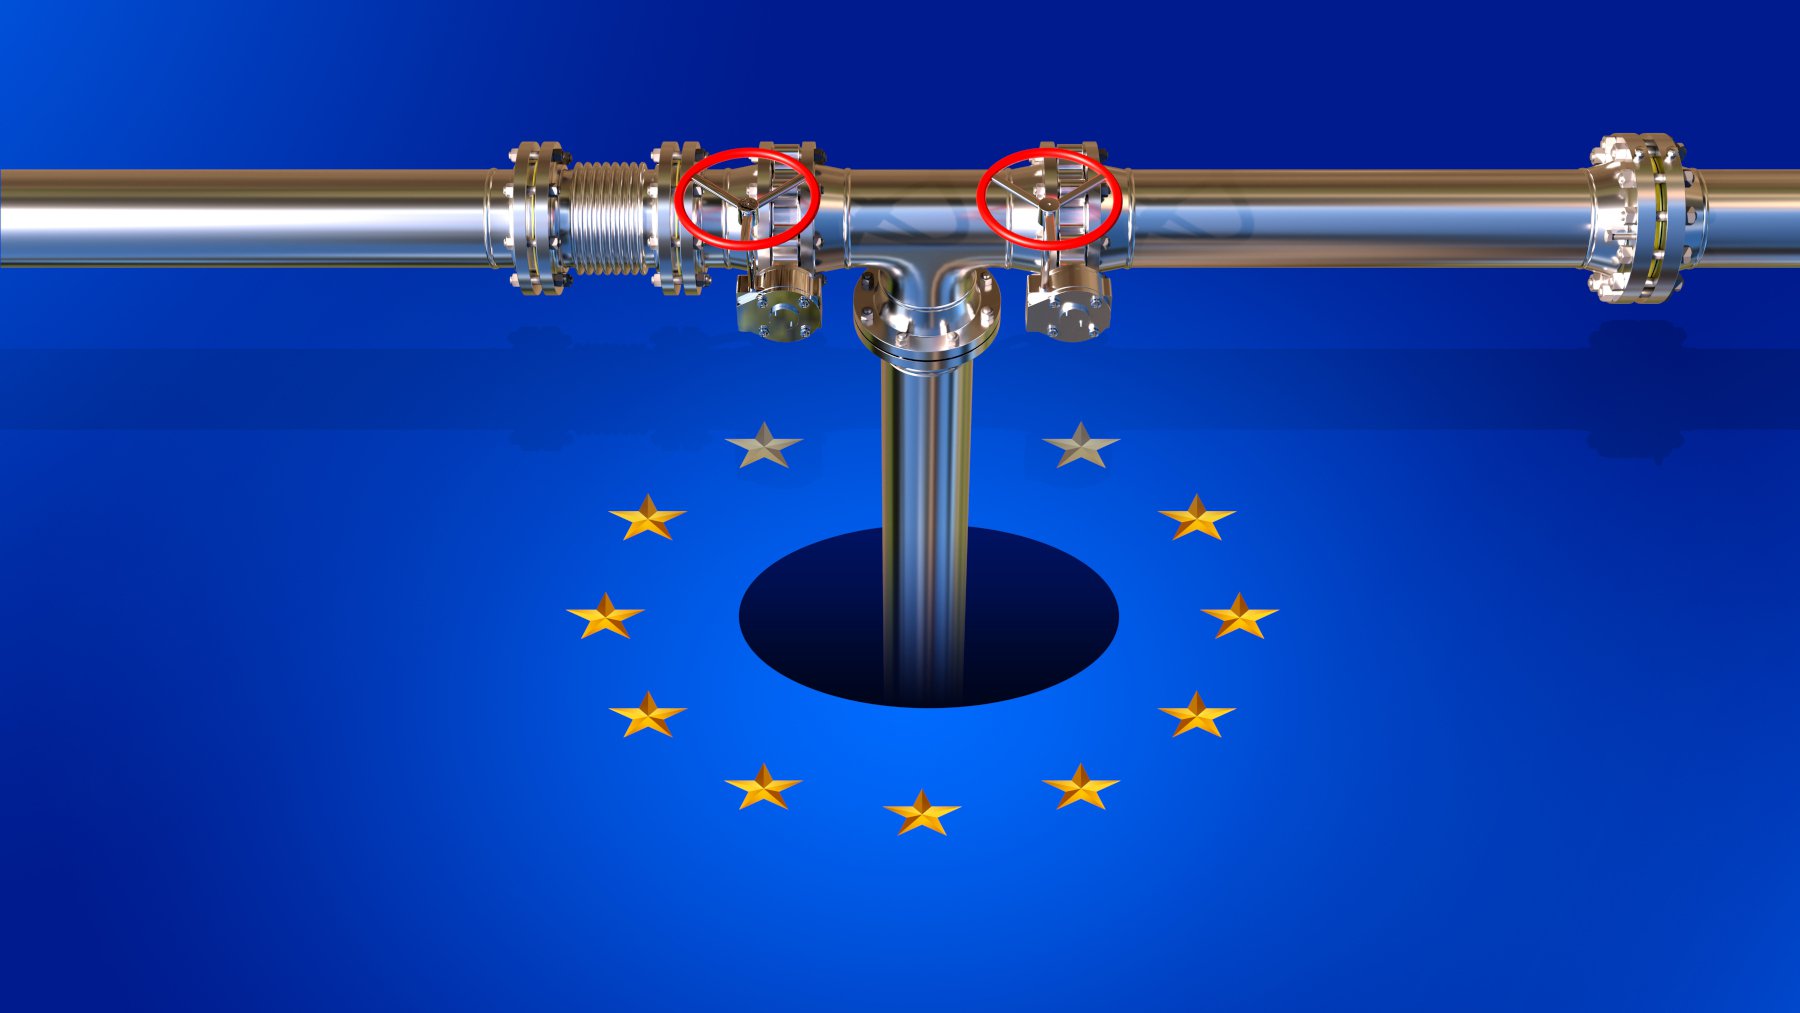 Με «μπροστάρισσα» την Ελλάδα: 14 χώρες στηρίζουν την ελληνική πρόταση για πλαφόν στις τιμές φυσικού αερίου, συνεδριάζει η Ε.Ε.